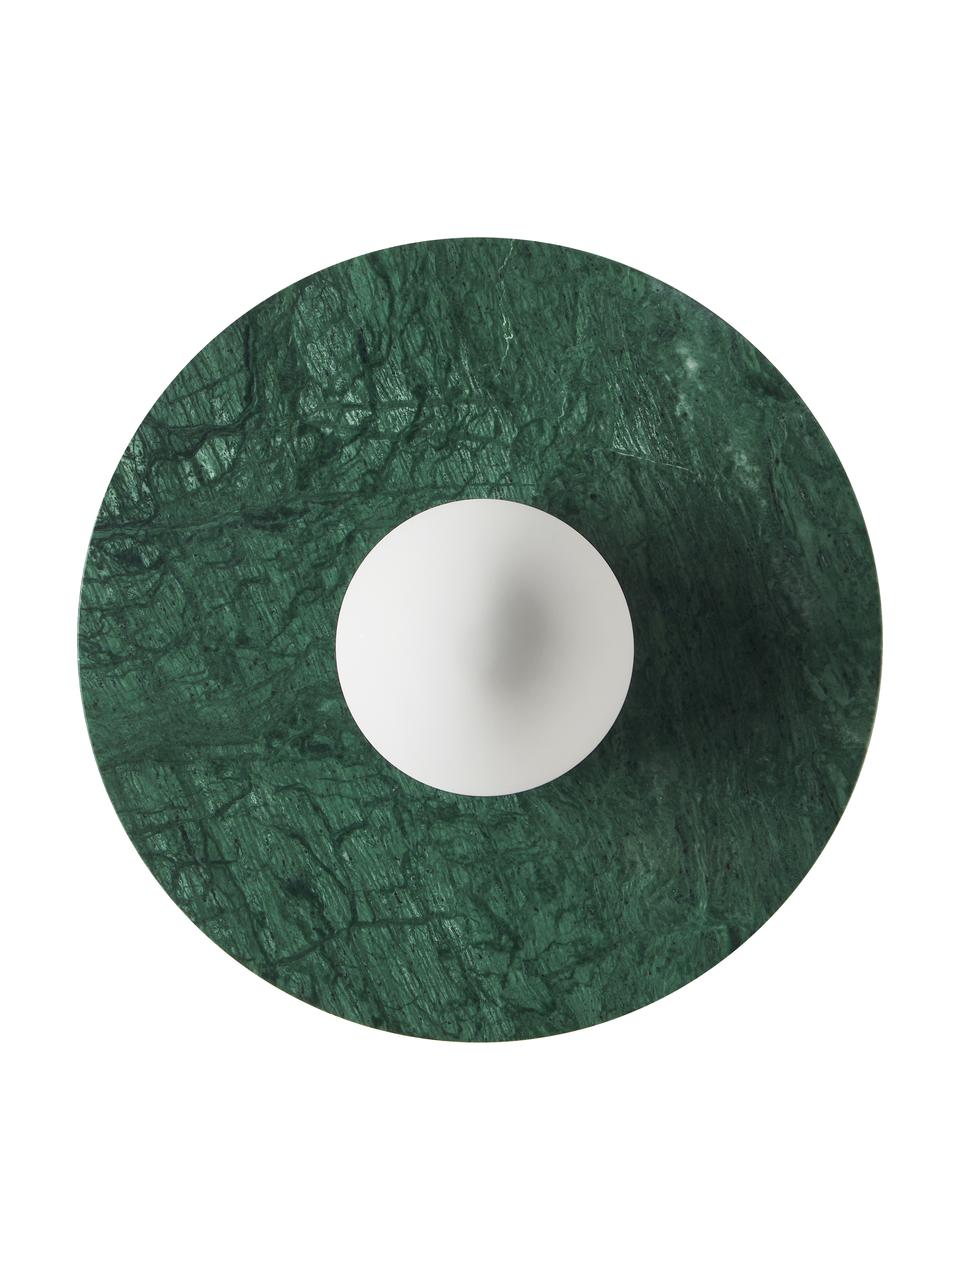 Kinkiet/lampa sufitowa z marmuru Cehlani, Zielony marmur, Ø 28 x W 16 cm